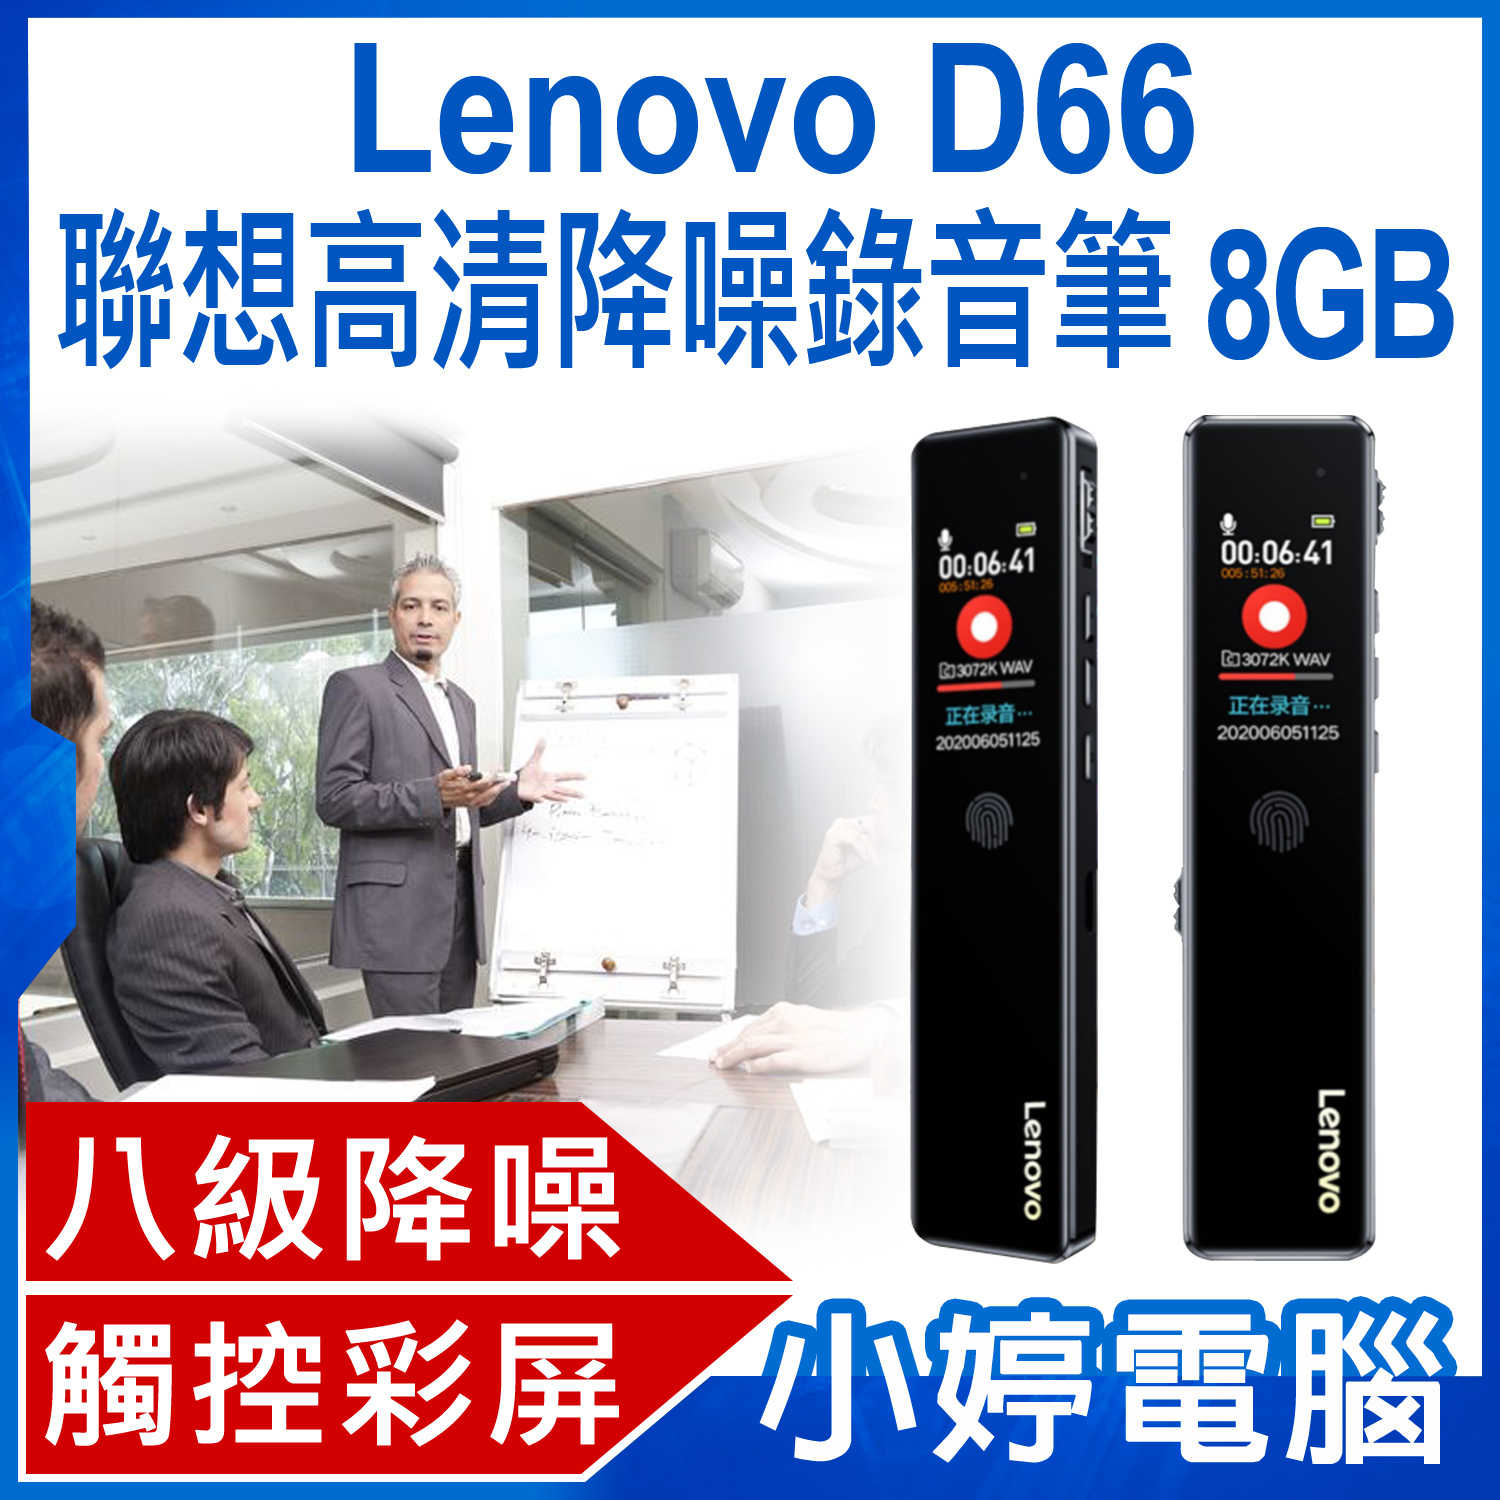 【小婷電腦】Lenovo D66 聯想高清降噪錄音筆 8GB 八級降噪 高清音質 定時錄音 觸控操作